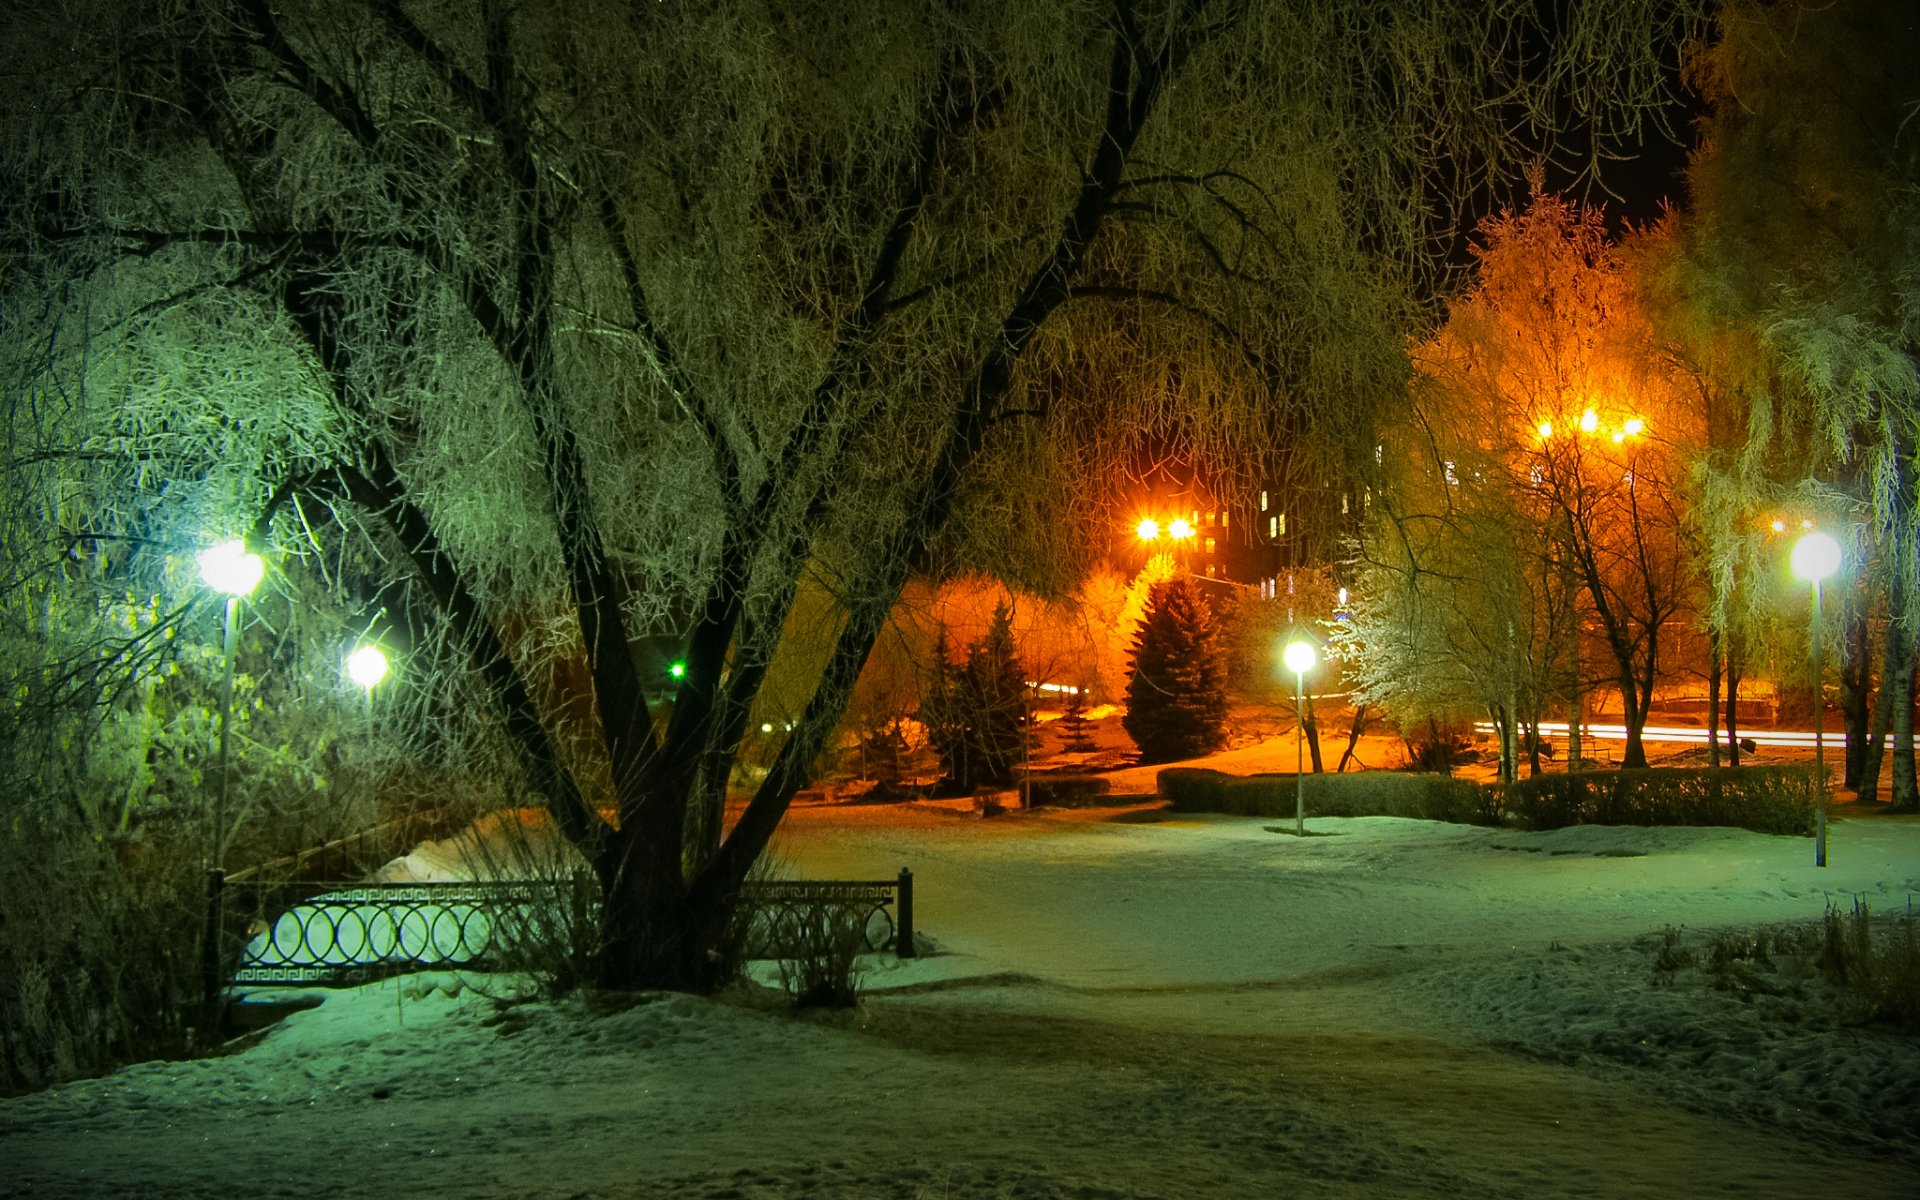 6 вечера зимой. Зима. К вечеру. Зимний вечер в городе. Зимний парк. Зимний парк ночью.